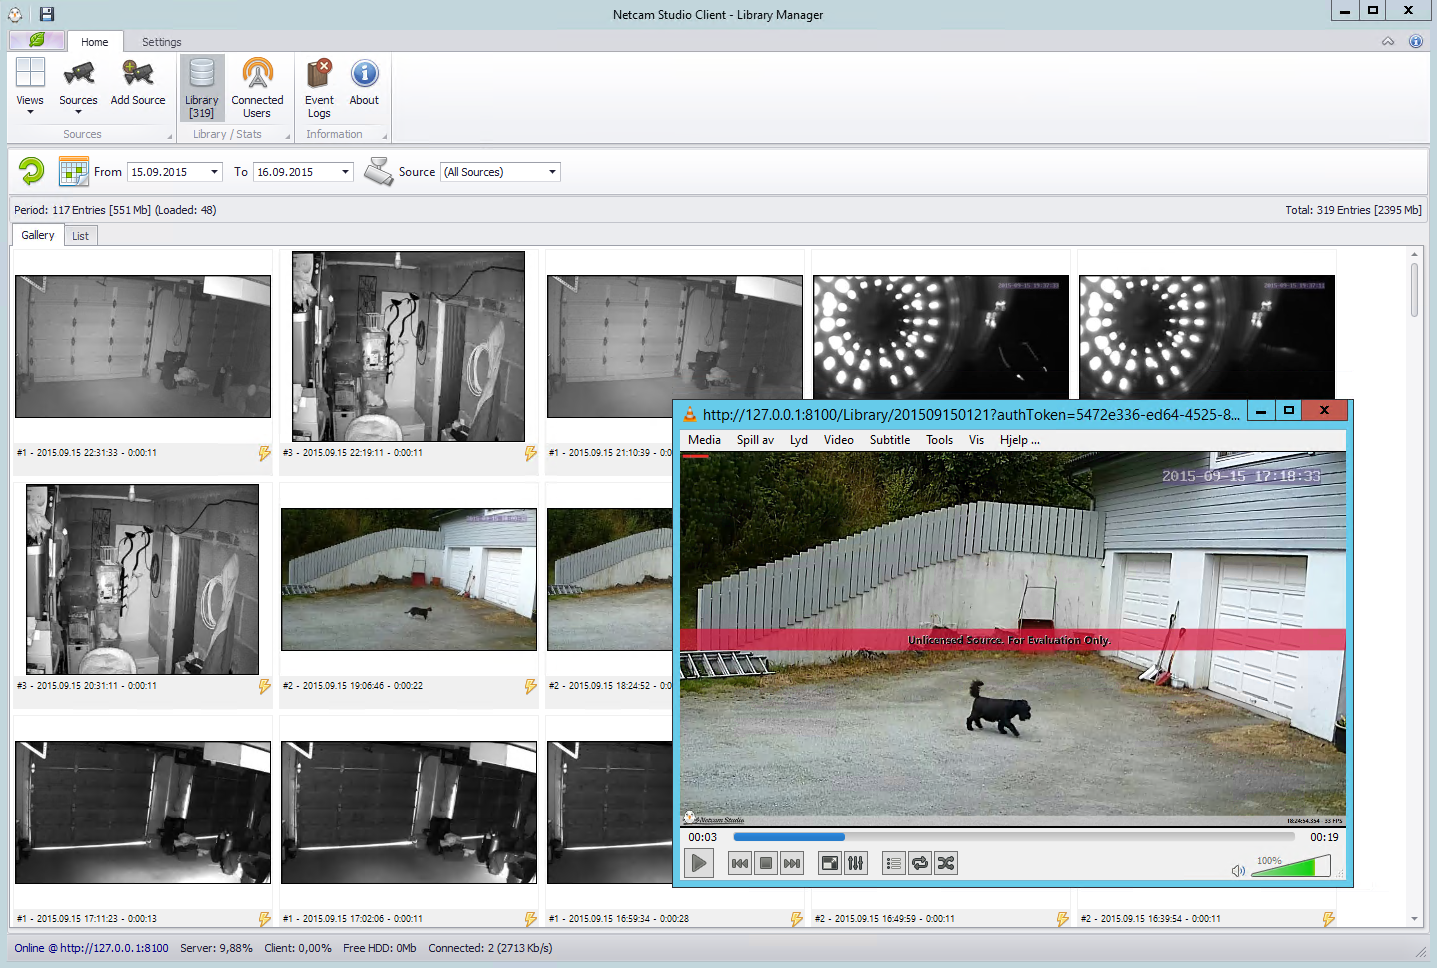 sighthound video surveillance software